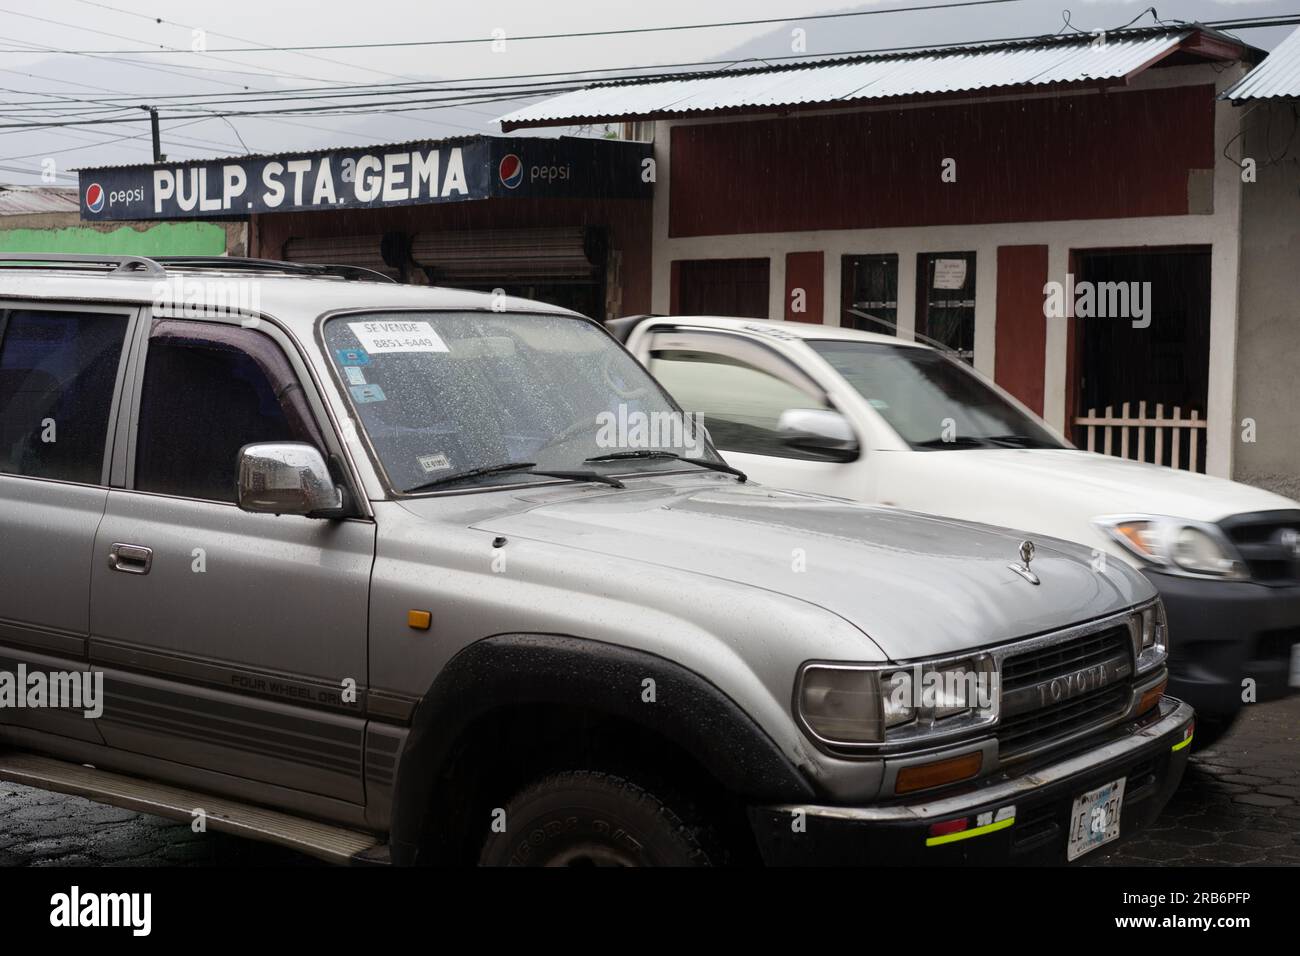 Der Toyota SUV parkte auf der Straße, während ein weißer Pick-up auf einer Straße in Jinotega, Nicaragua, vorbeifuhr. Toyotas sind in Nicaragua sehr verbreitet. Stockfoto